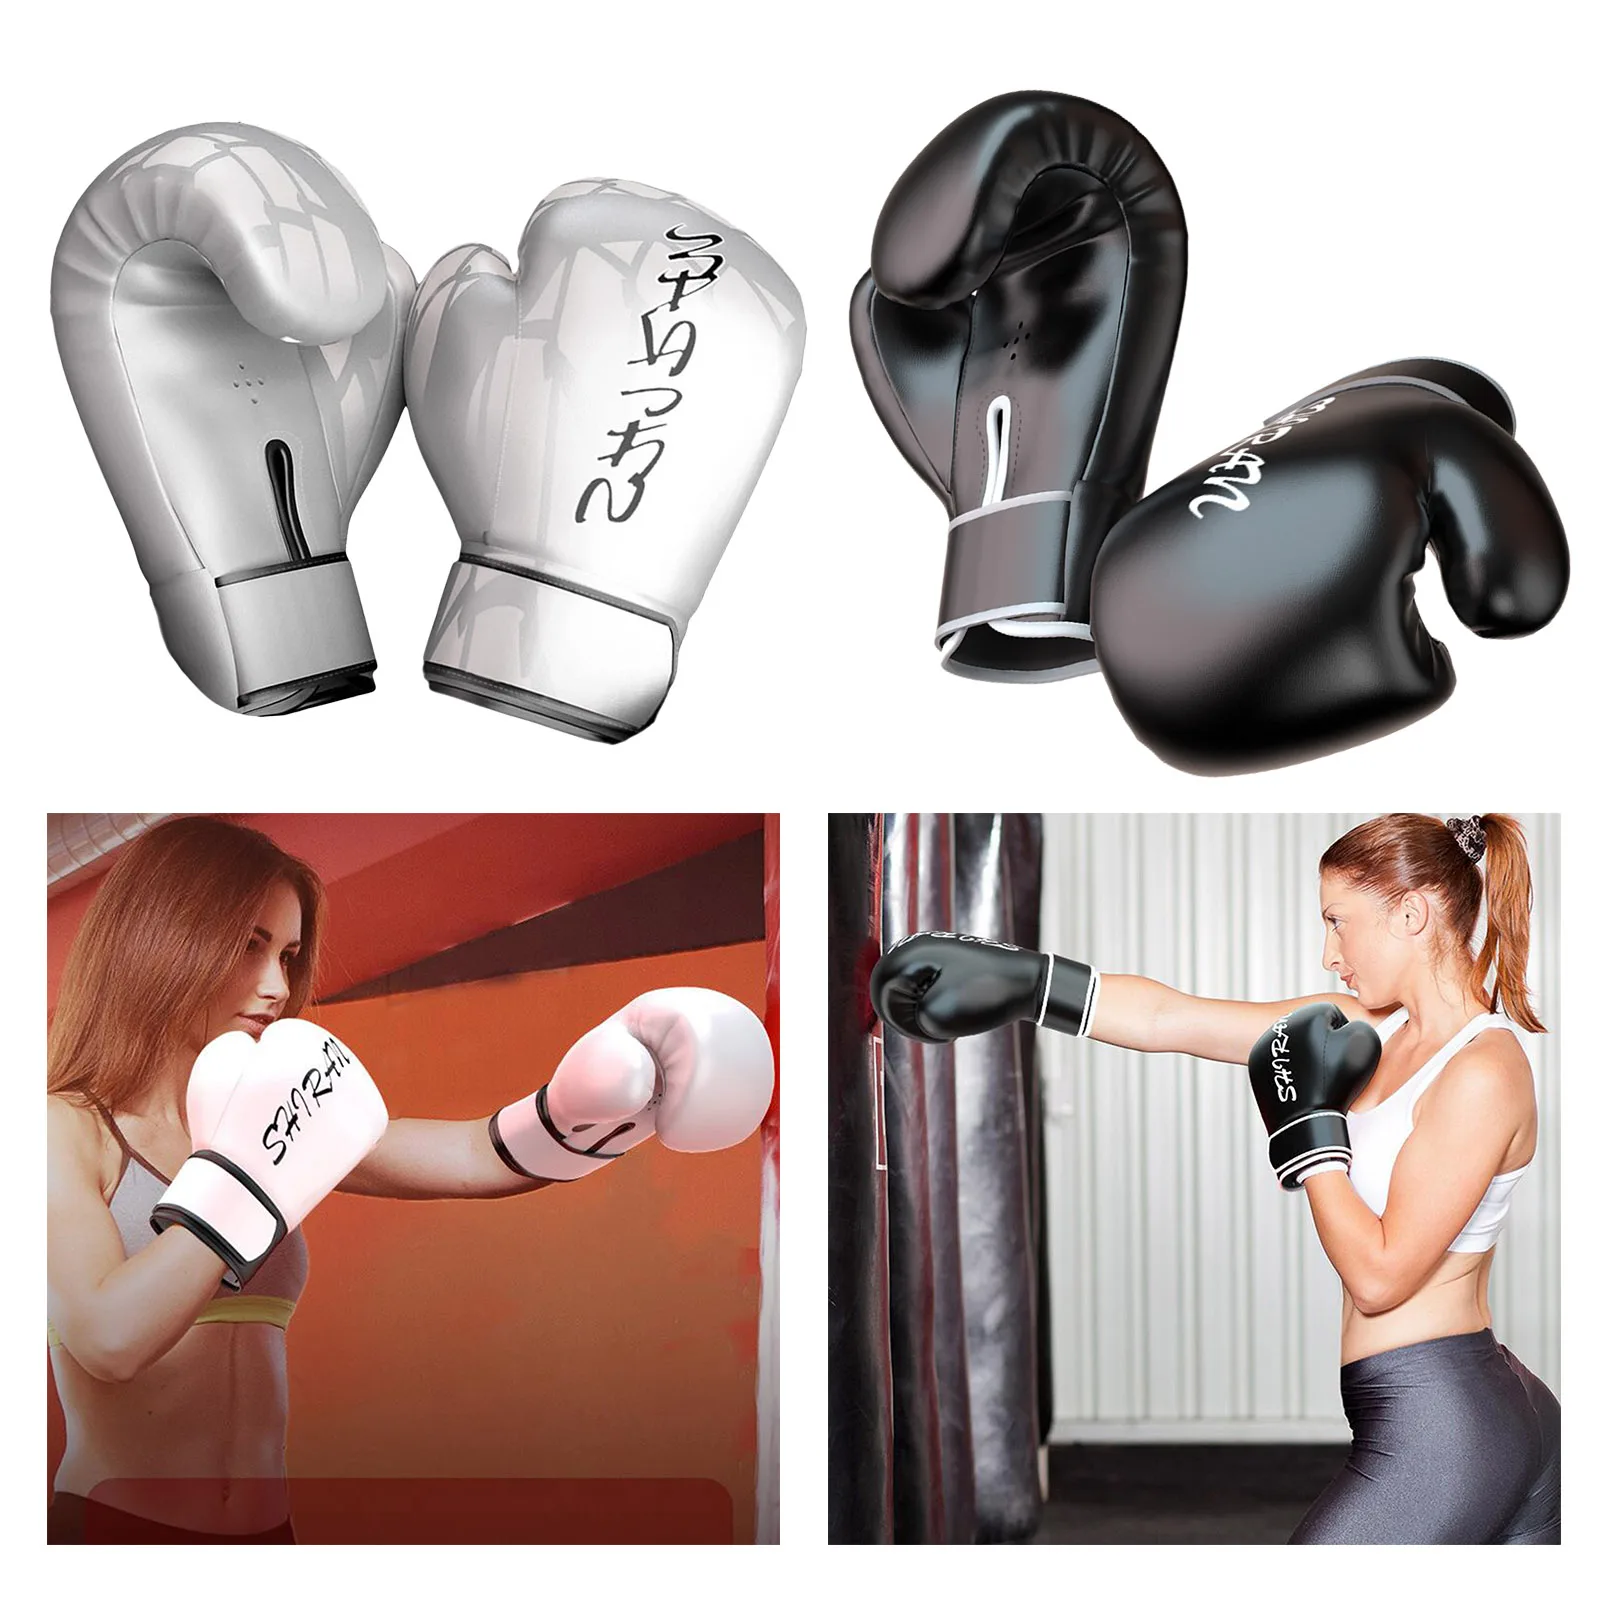 Velo Guantes de Boxeo Leather Sparring Saco de Boxeo Muay Thai Kick Boxing